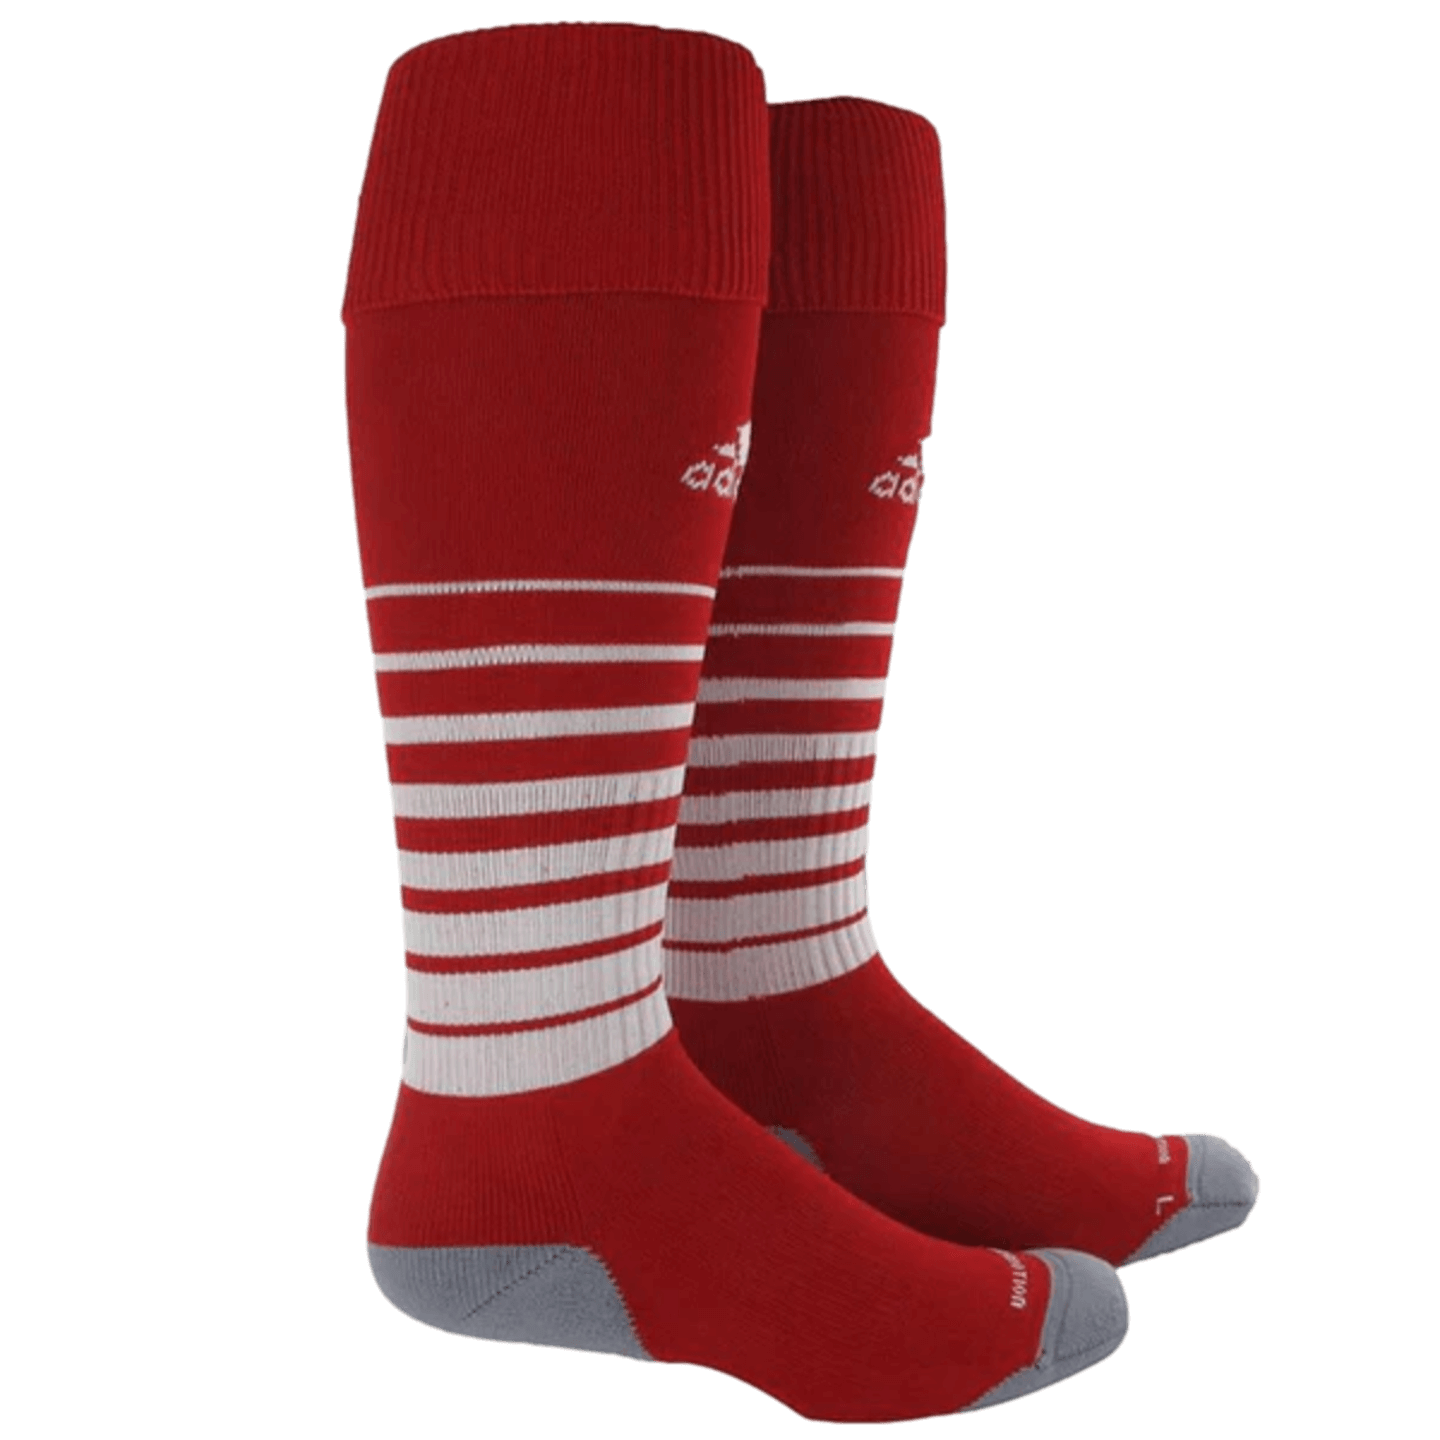 Adidas Team Speed Socks